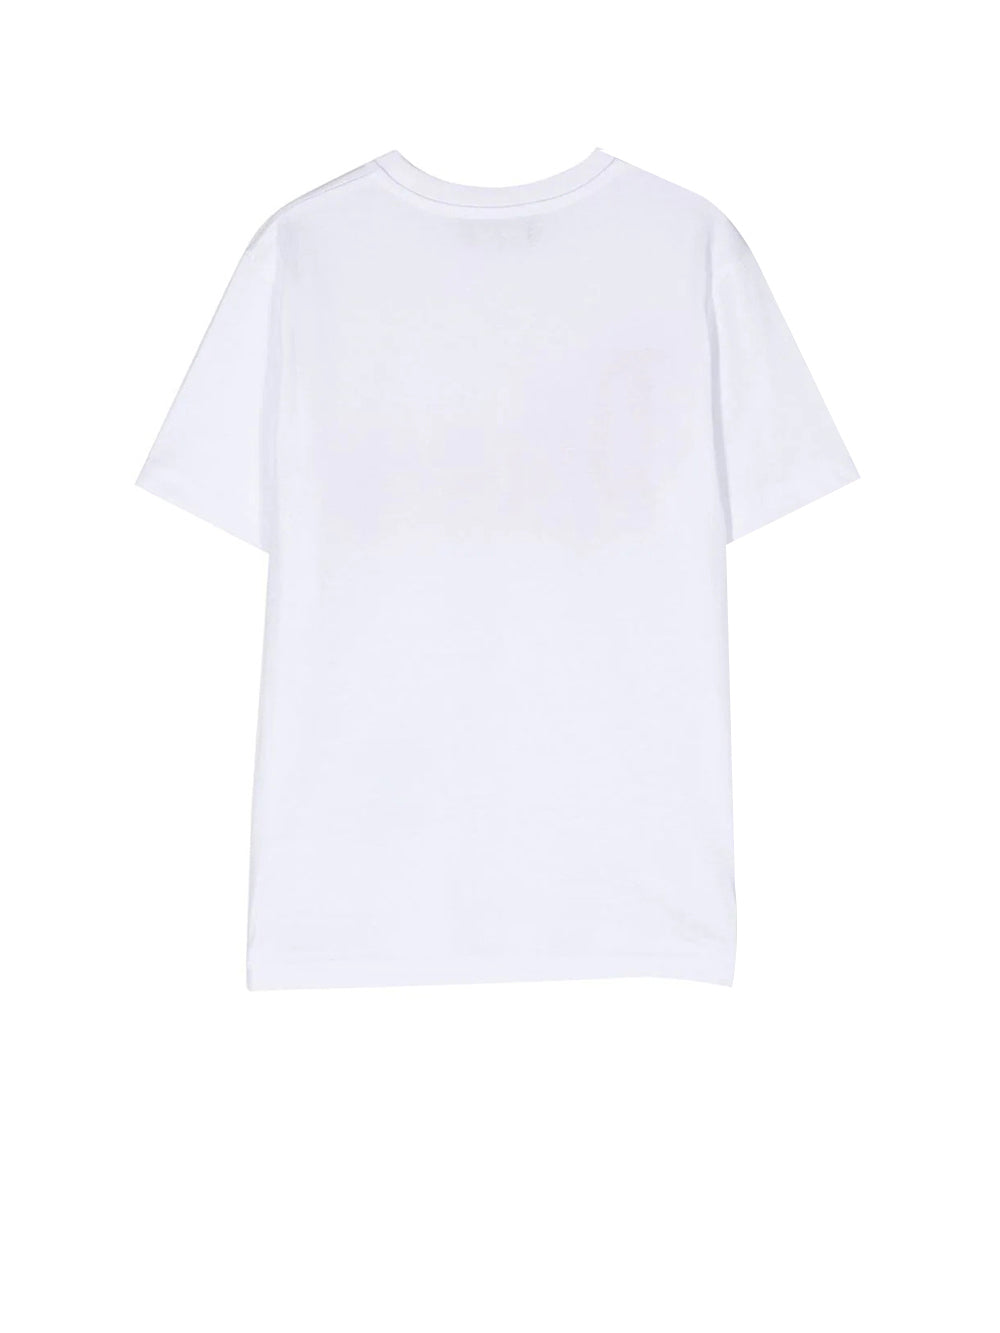 T-shirt Unisex Ragazzo Bianca in cotone con lettering brand